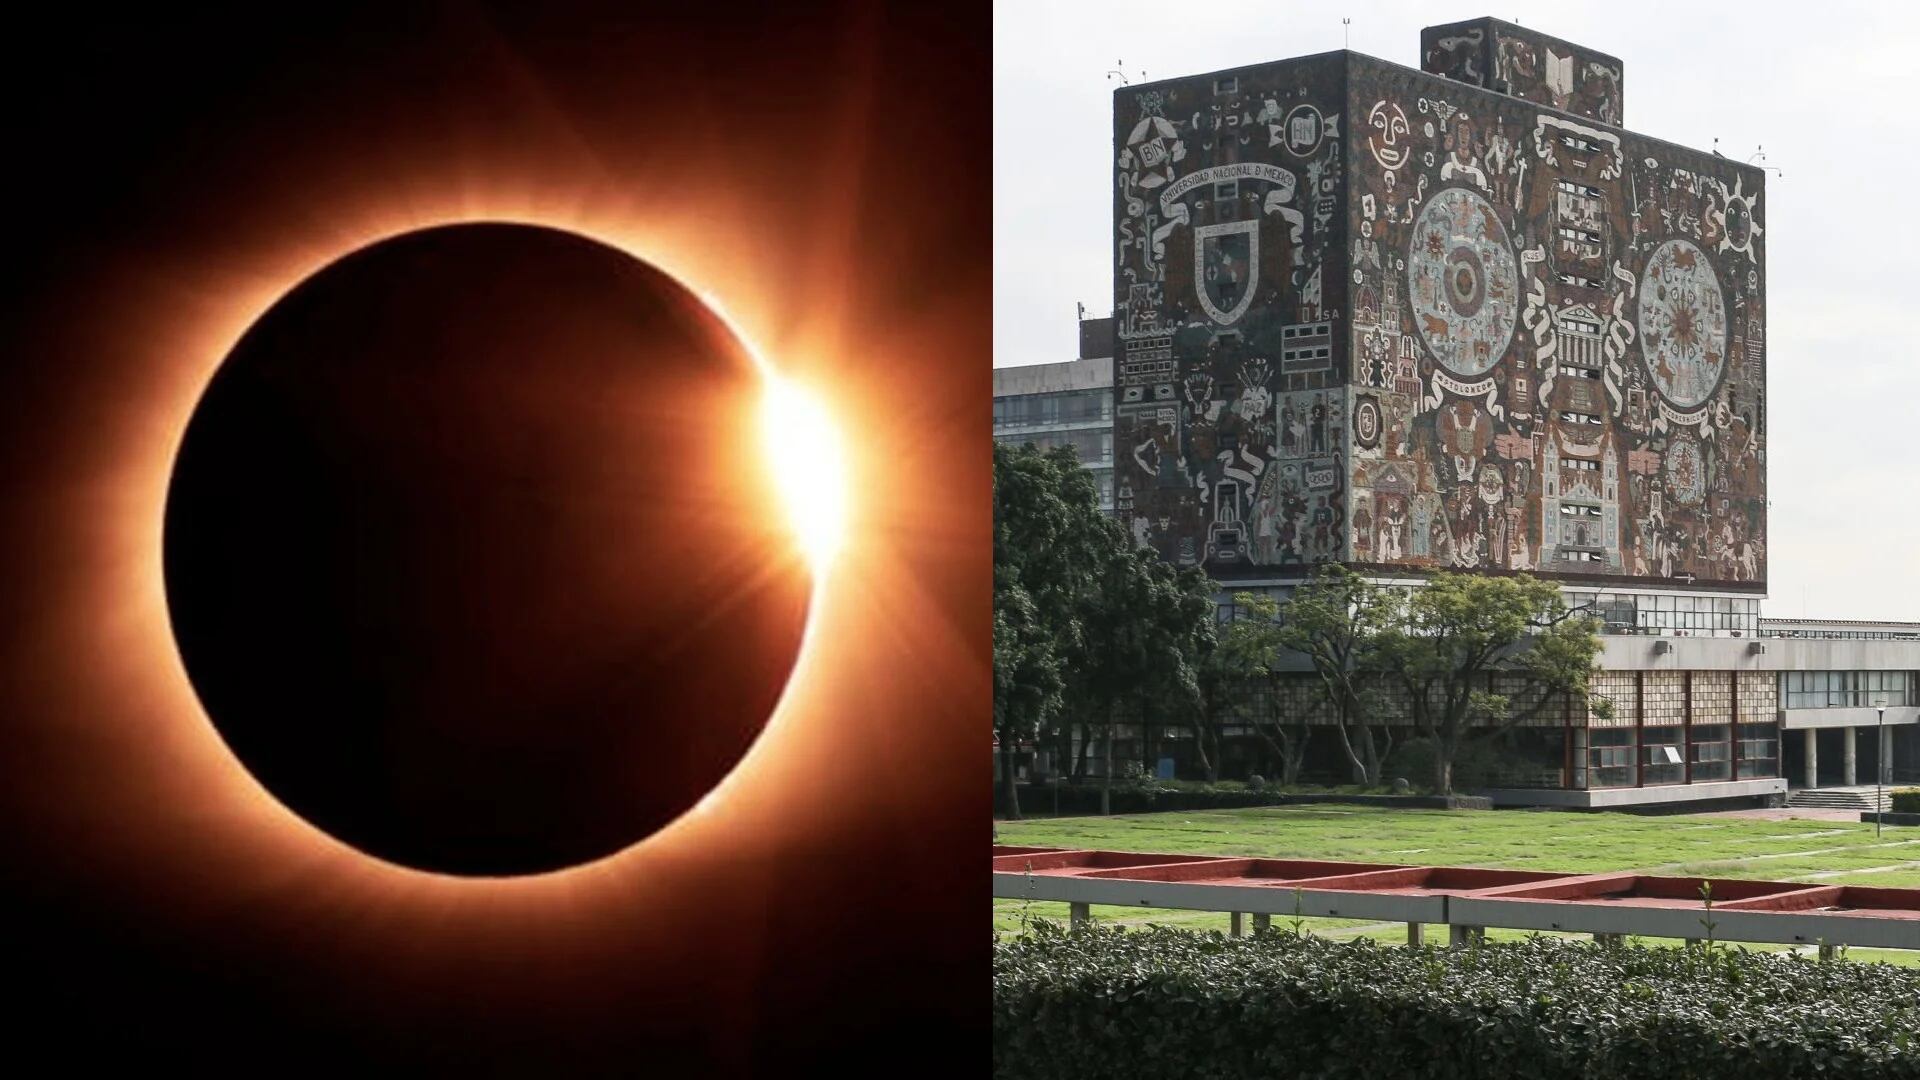 Eclipse solar en México 2023: te decimos cómo verlo desde las islas de Ciudad Universitaria de la UNAM